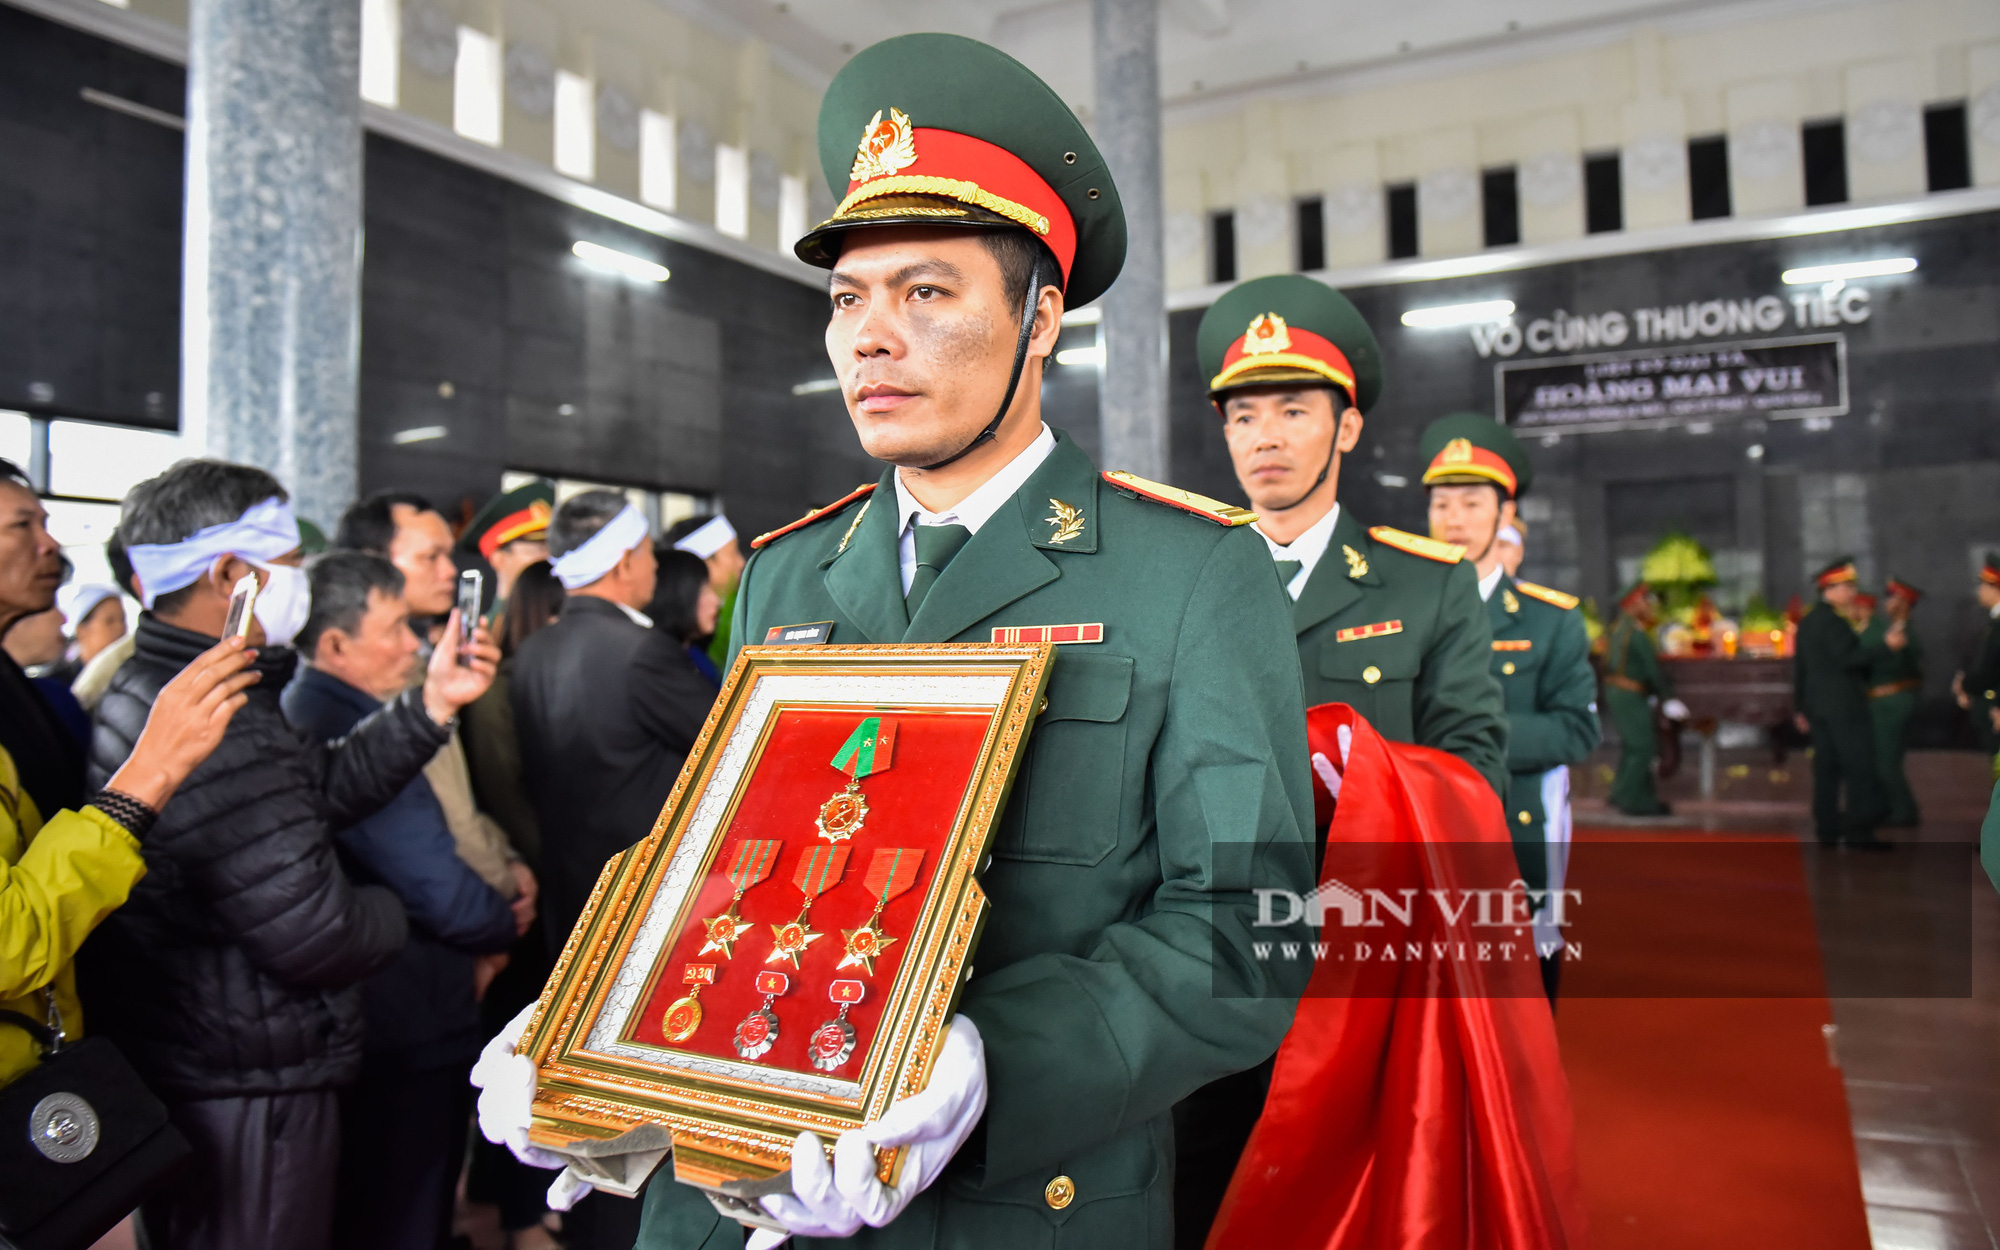 Những hình ảnh xúc động tại lễ viếng liệt sỹ đại tá Hoàng Mai Vui tại Thanh Hóa - Ảnh 11.